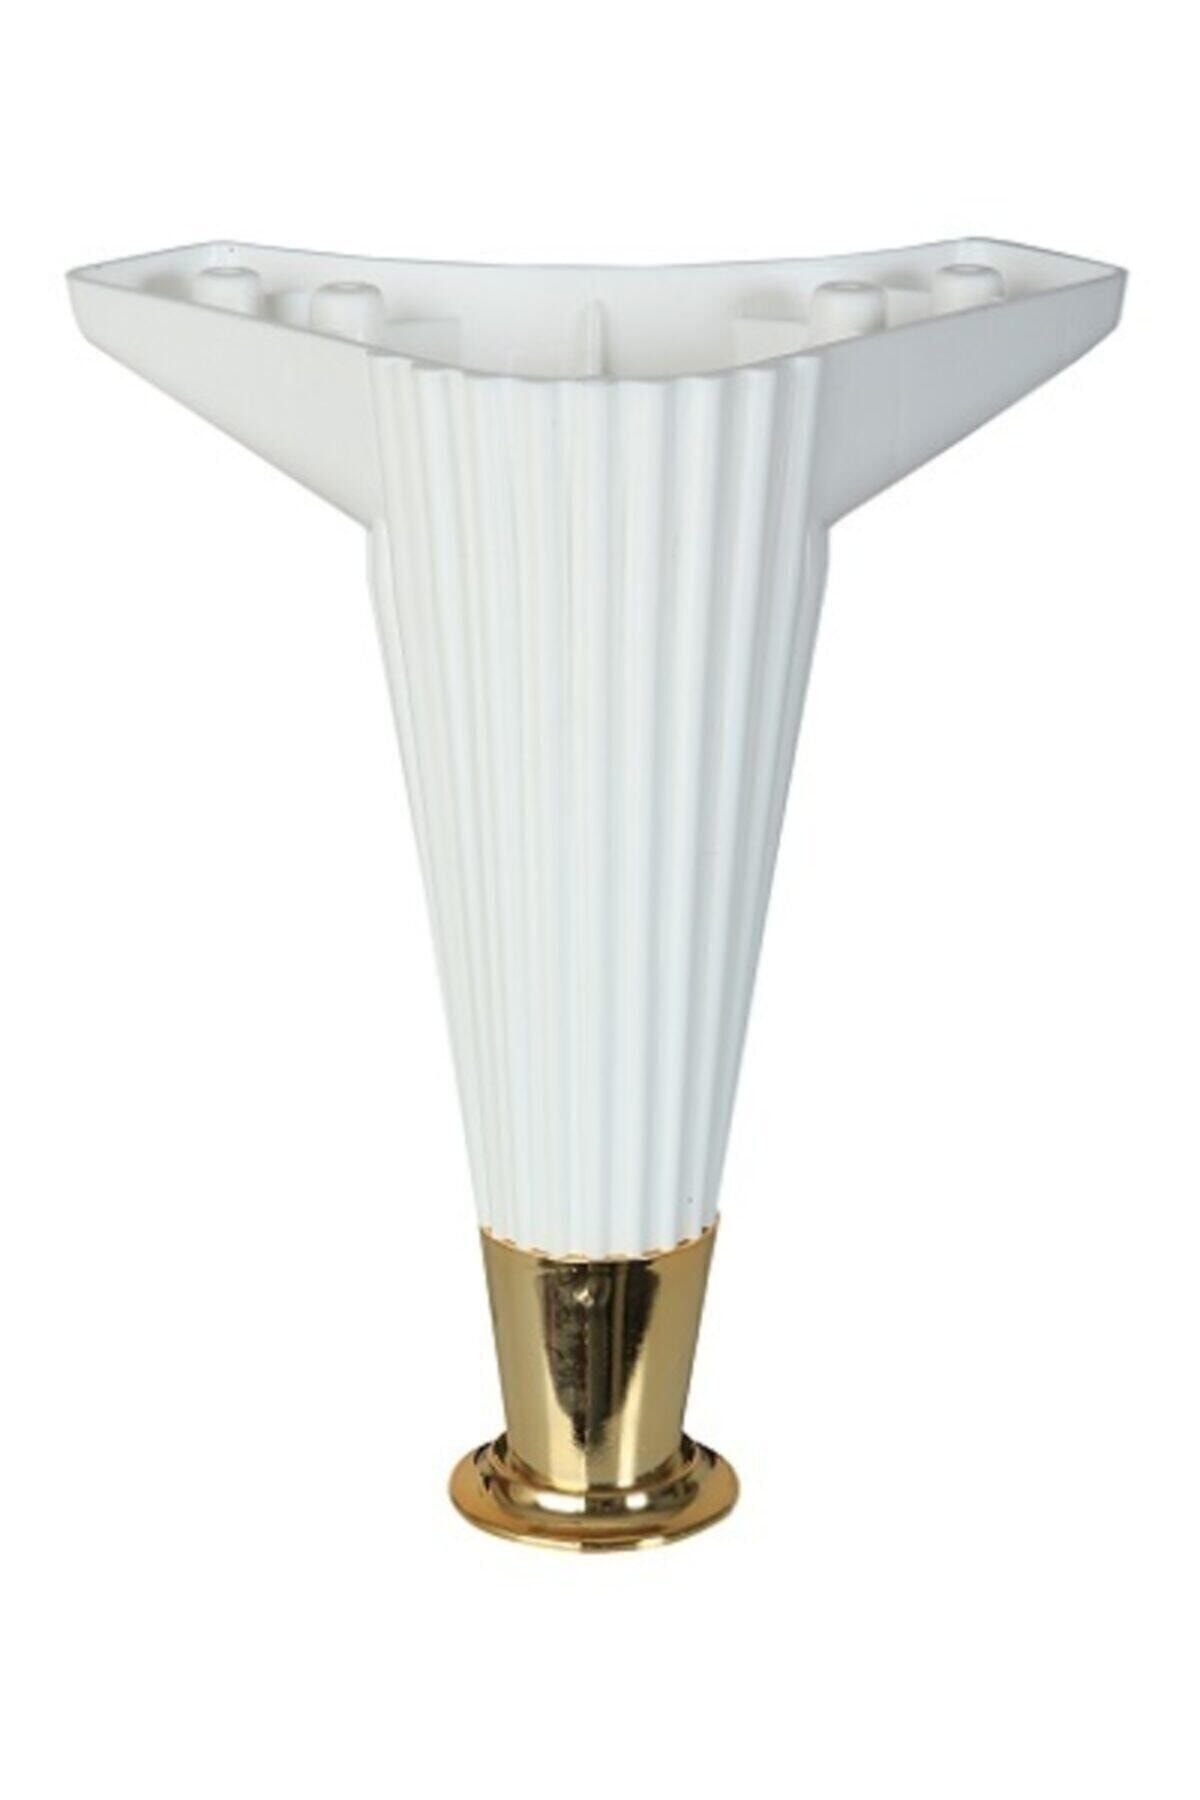 PVCBURADA Asya Çizgili 20cm Beyaz / Gold Mobilya Ayağı- Dolap, Koltuk , Tv Ünitesi Ayağı